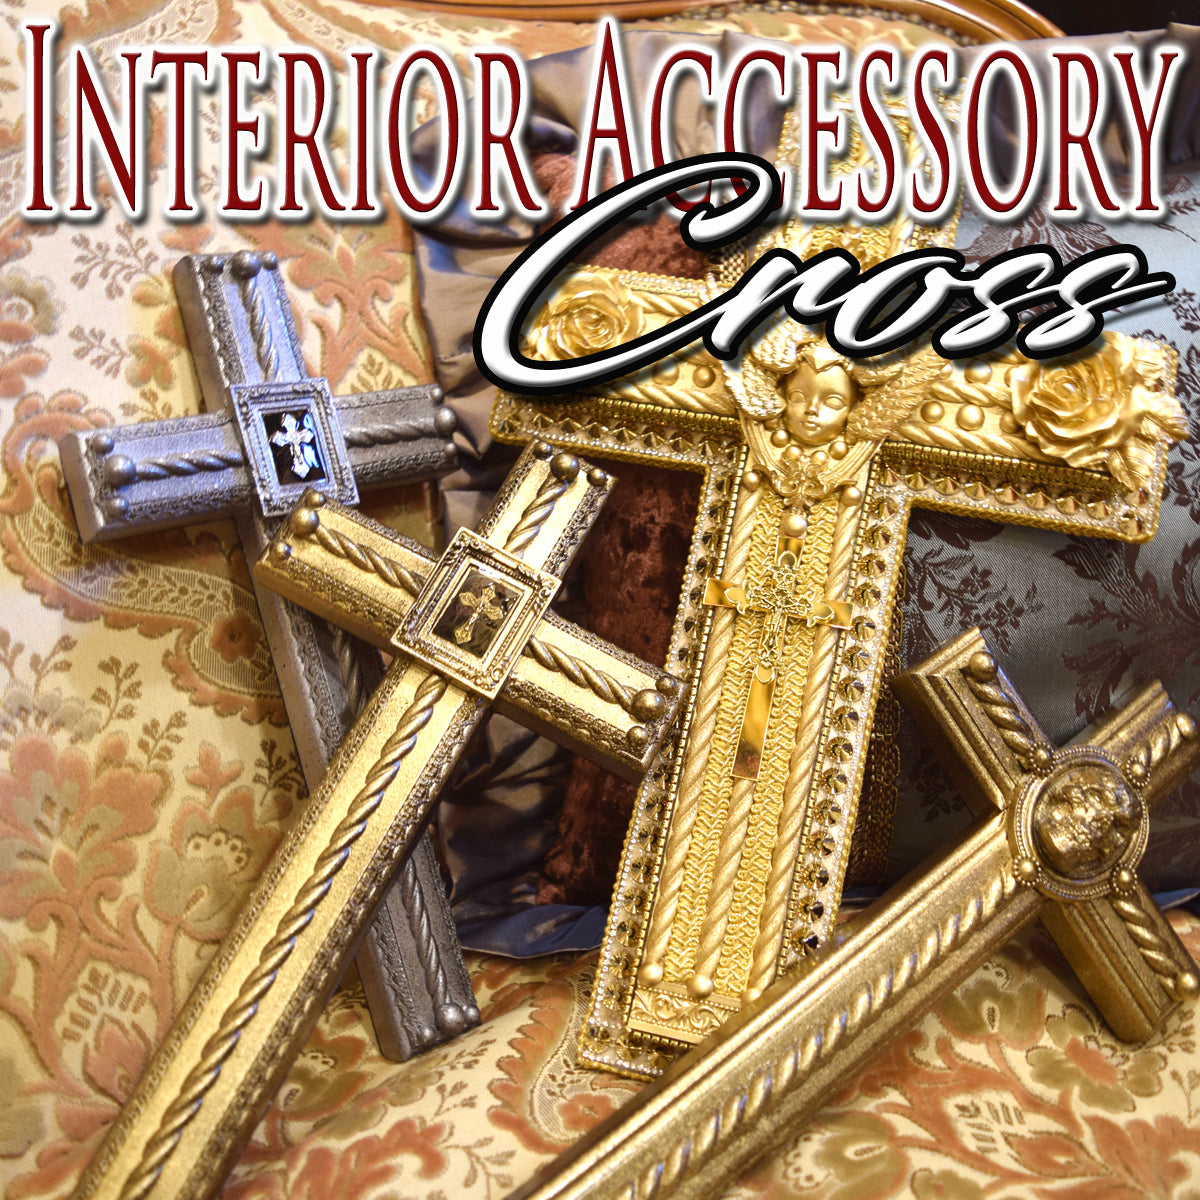 Interior Accessory Cross